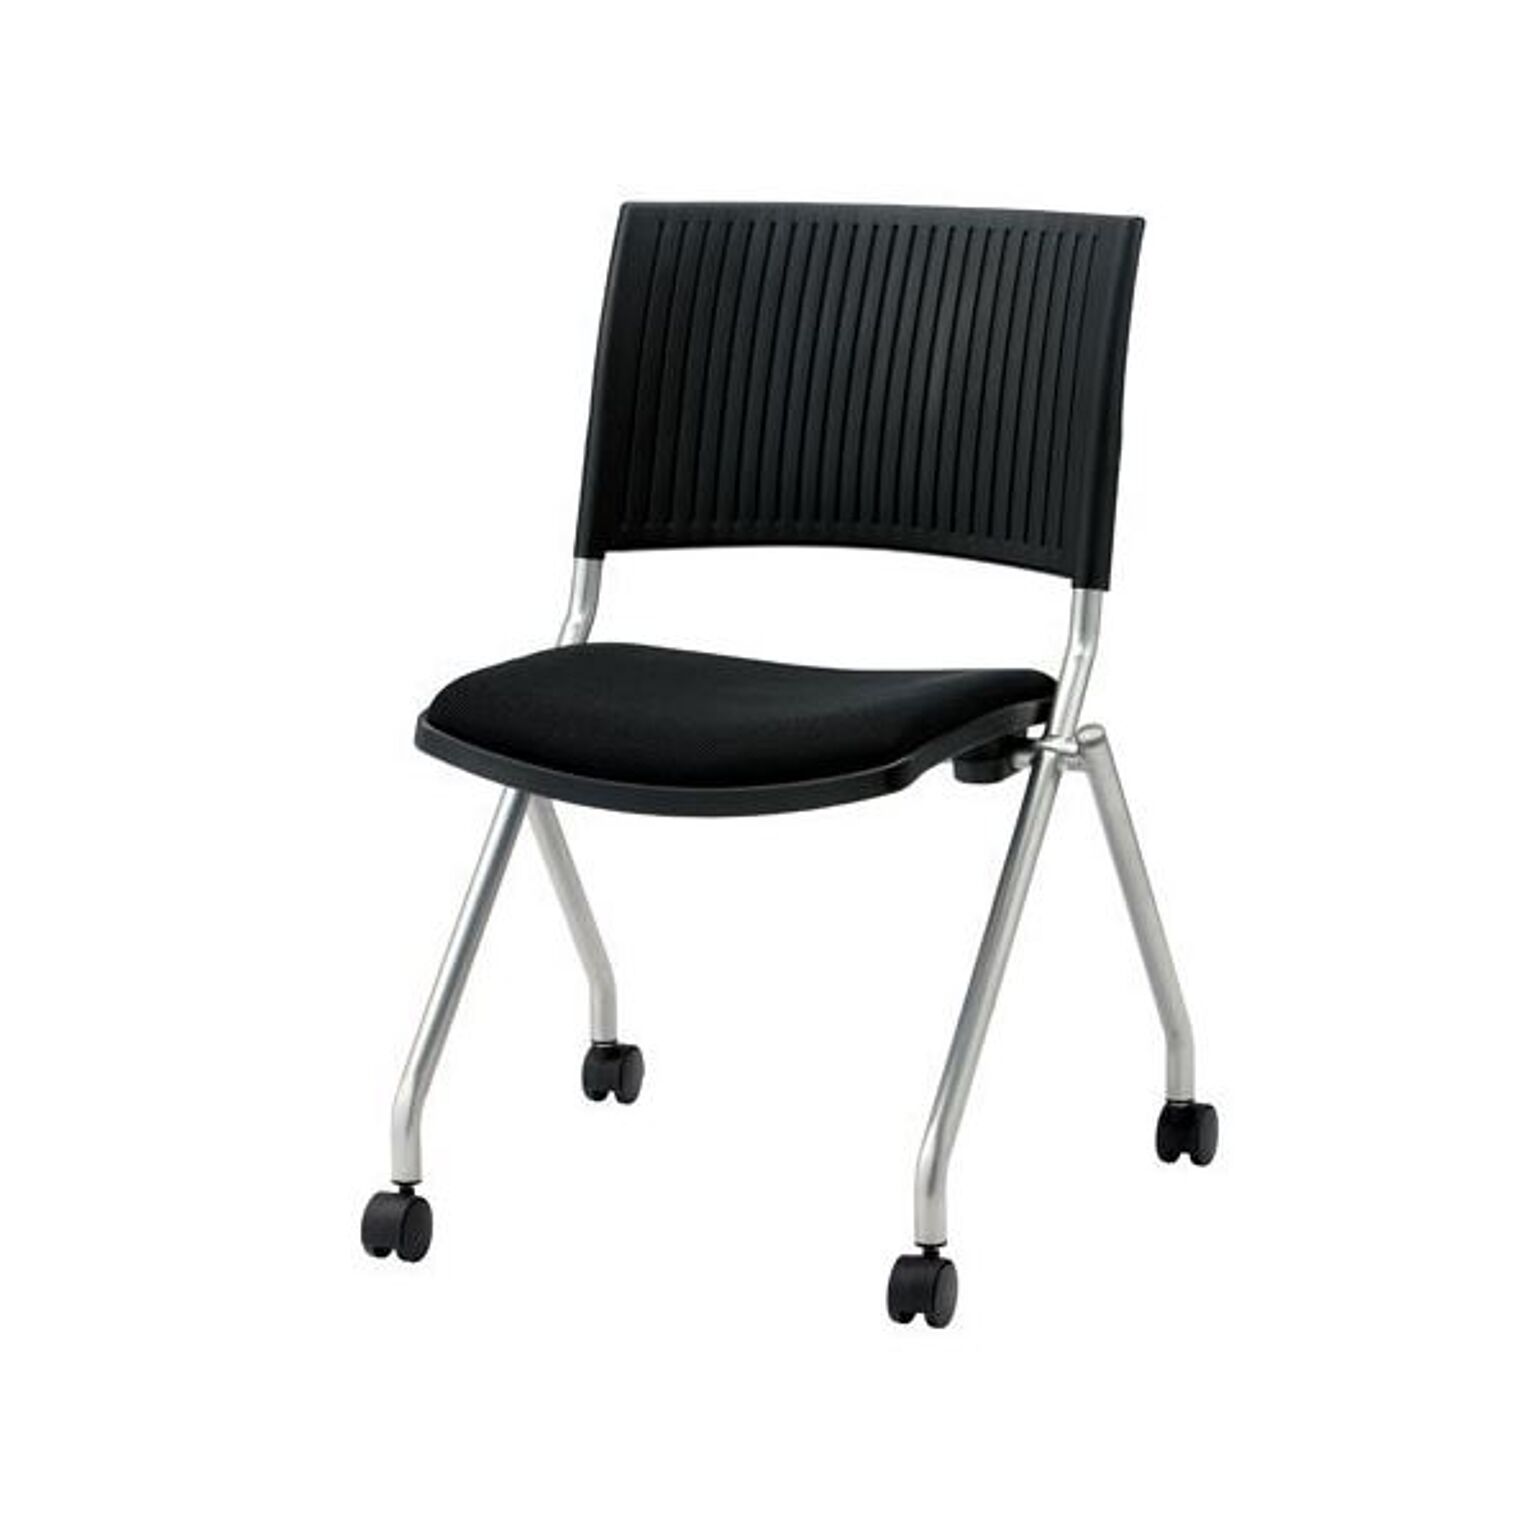 ジョインテックス 会議椅子(スタッキングチェア/ミーティングチェア) 肘なし キャスター付き FJC-K5 ブラック 完成品